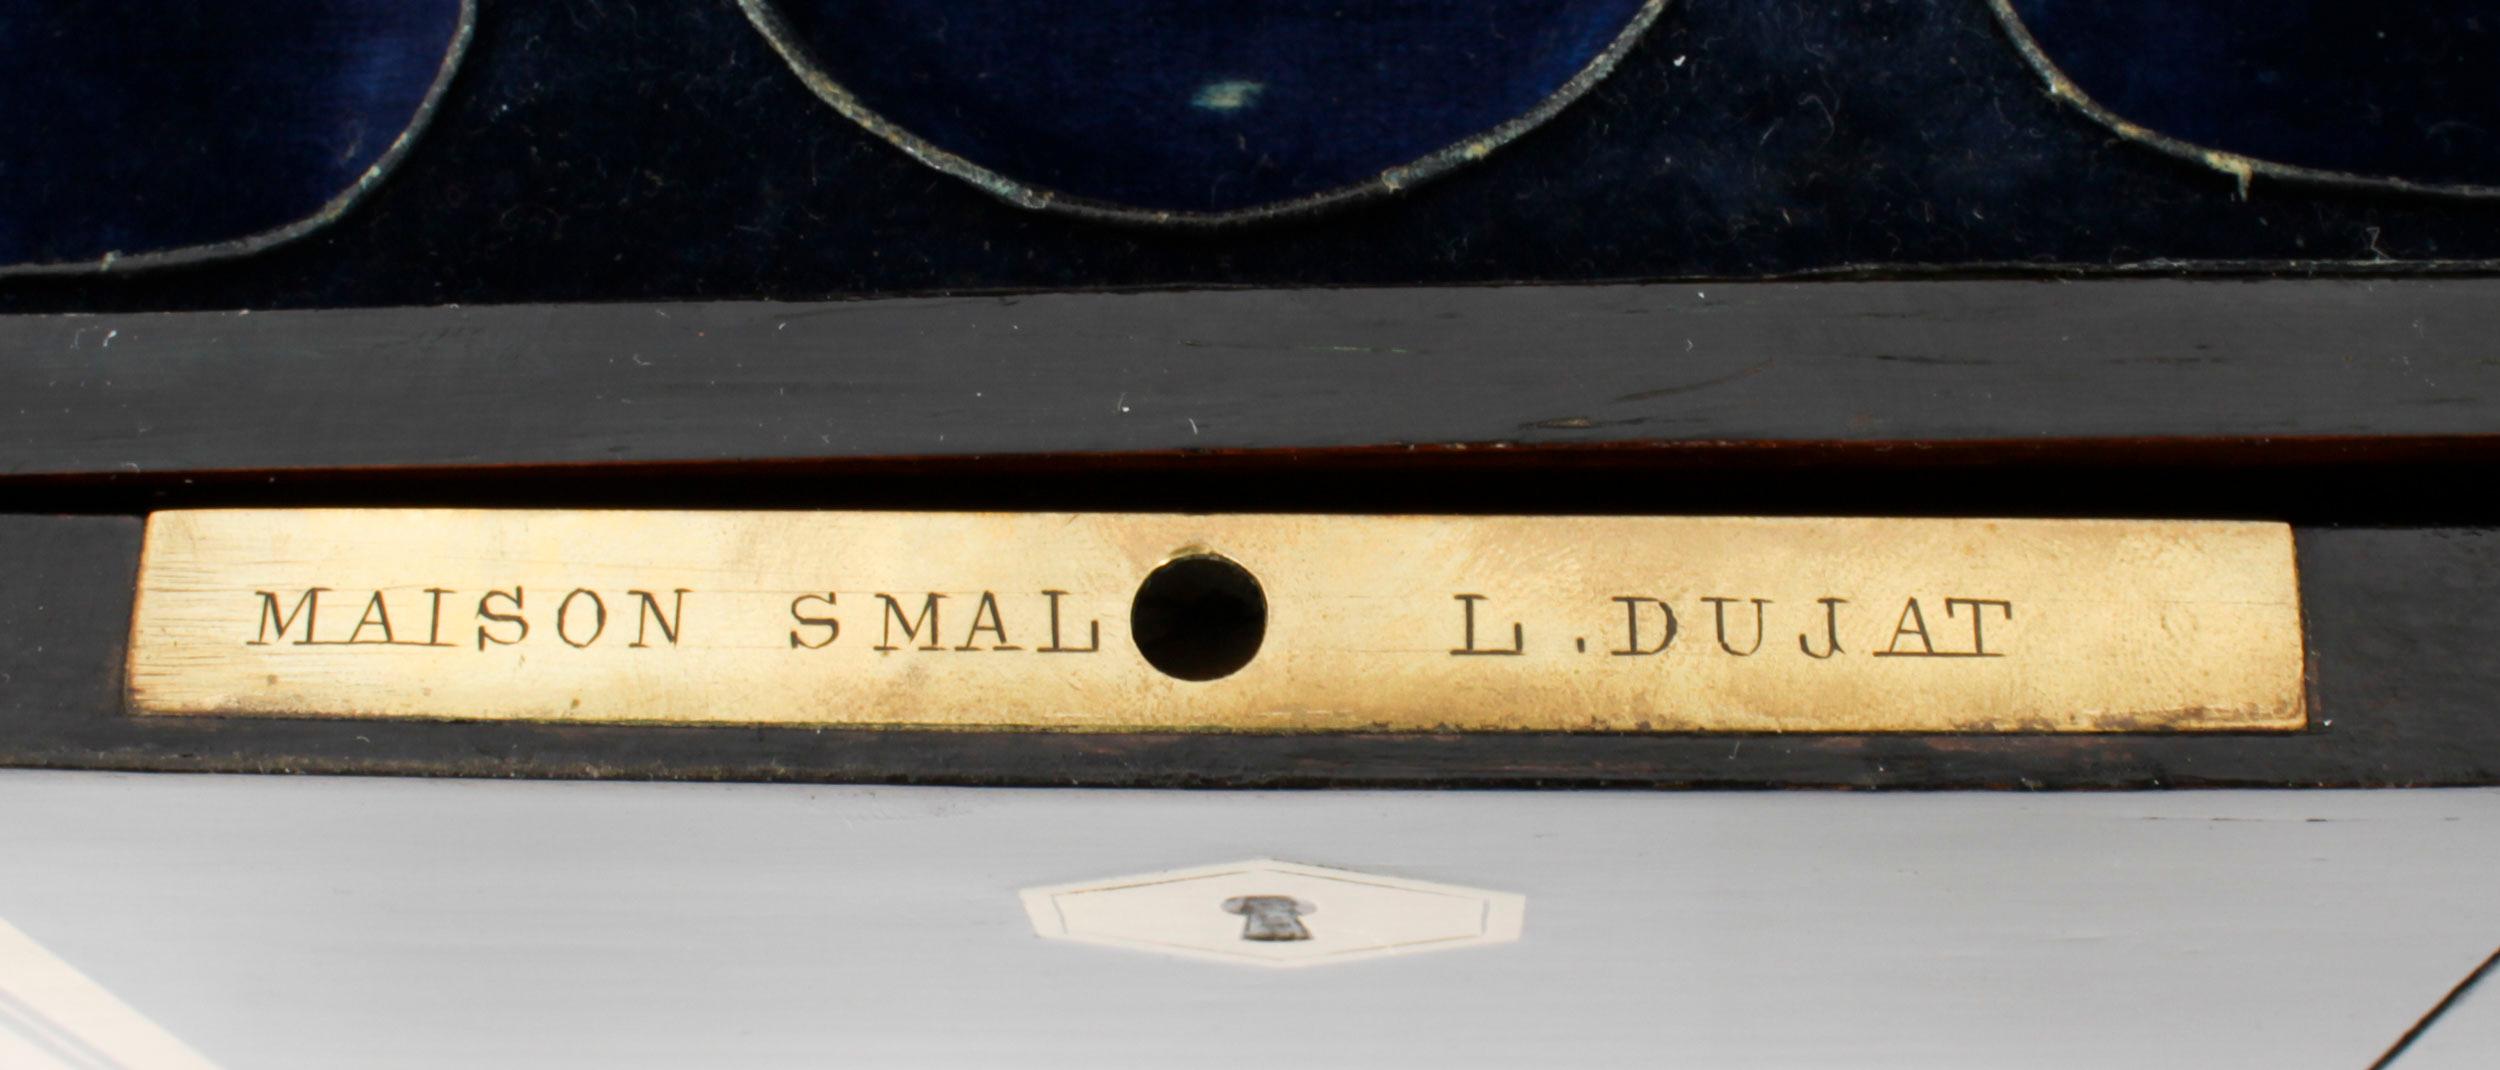 Antique Palais Royal French Casket Necessaire Vanity Chest by L. Dujat 19th C For Sale 5